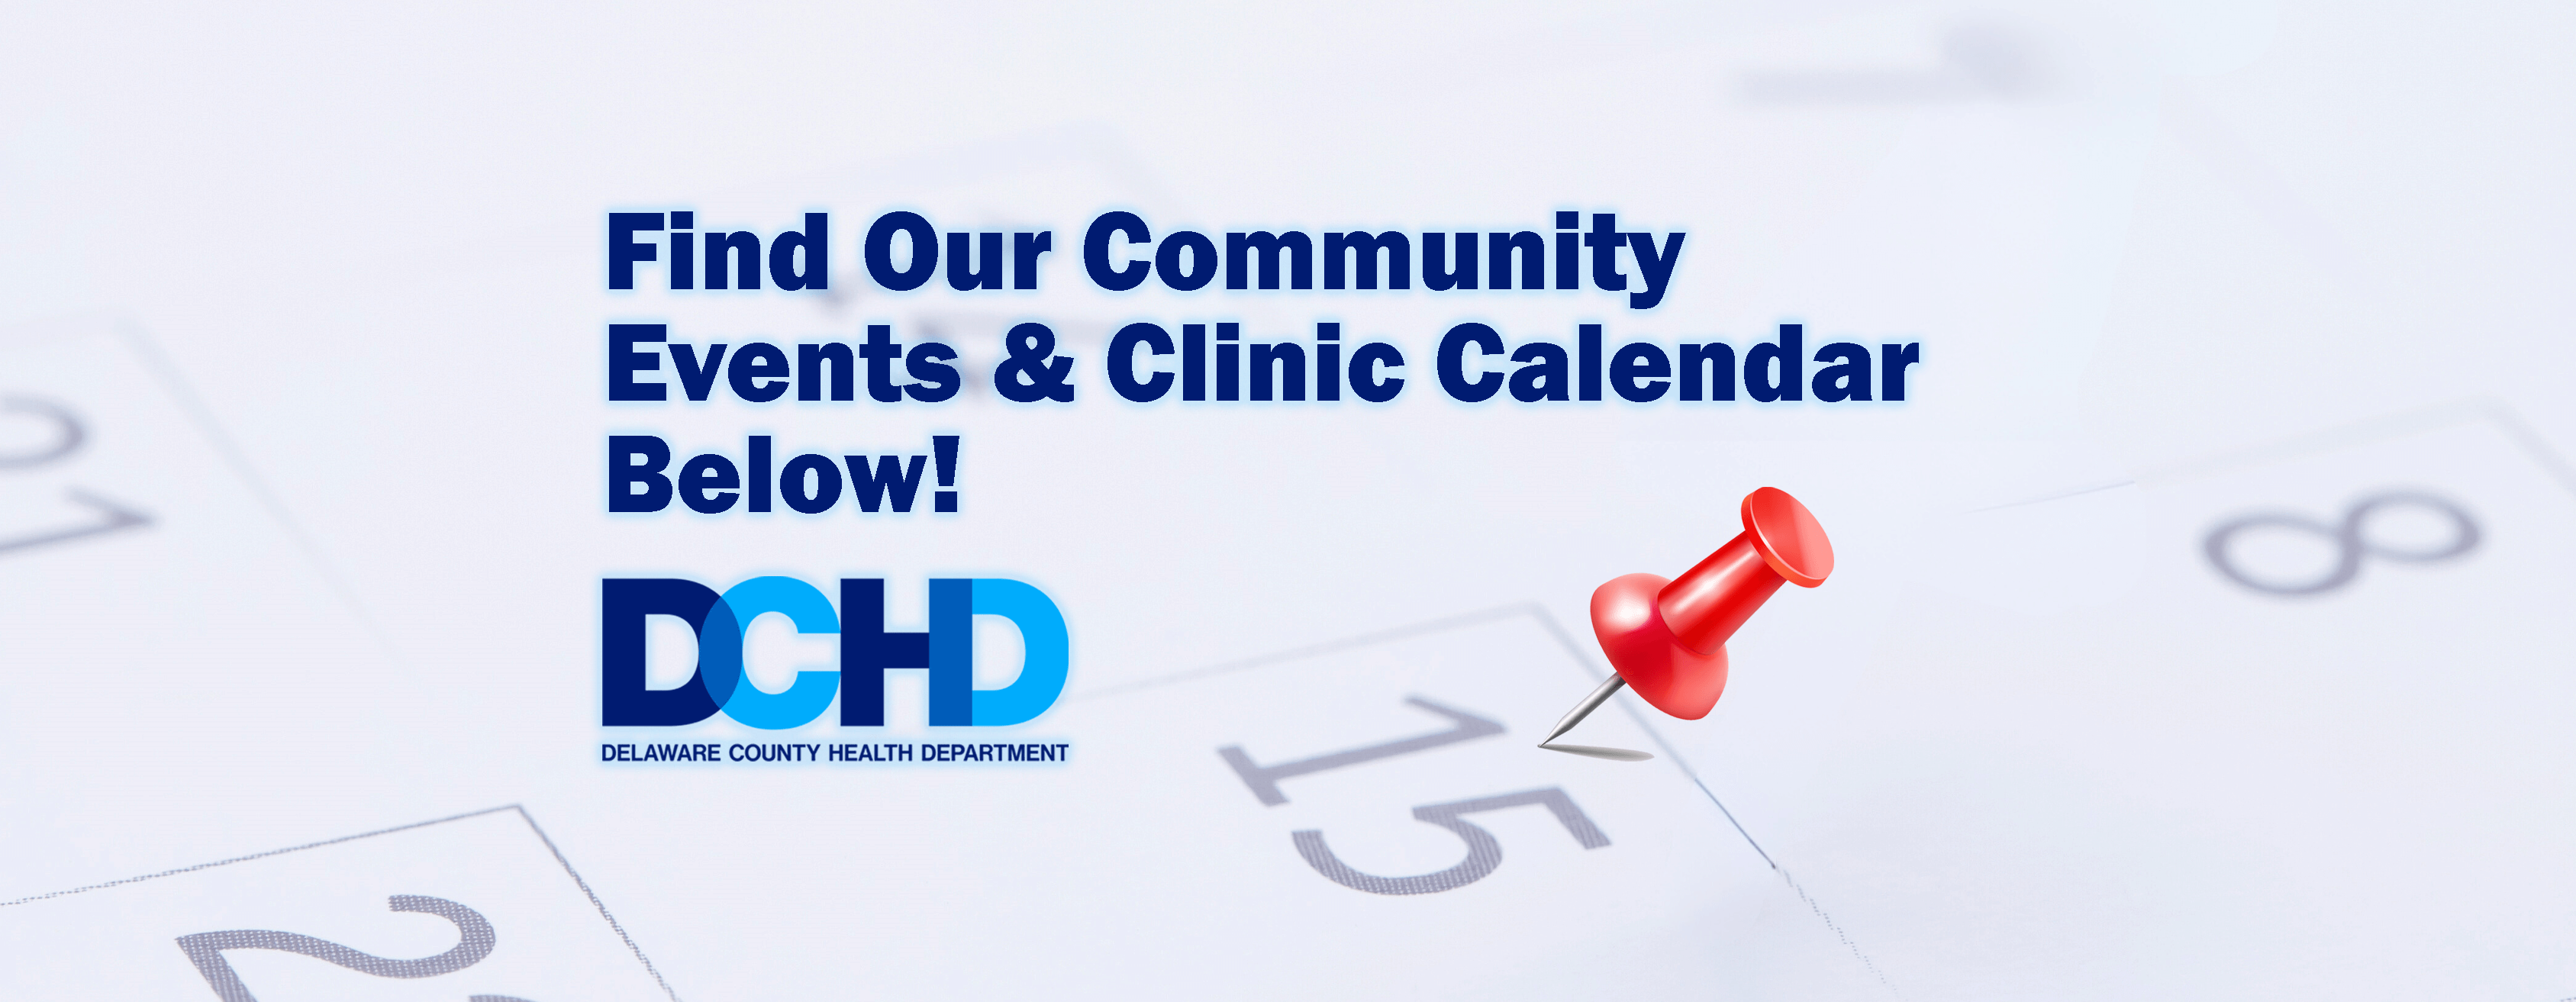 DCHD Events Calendar